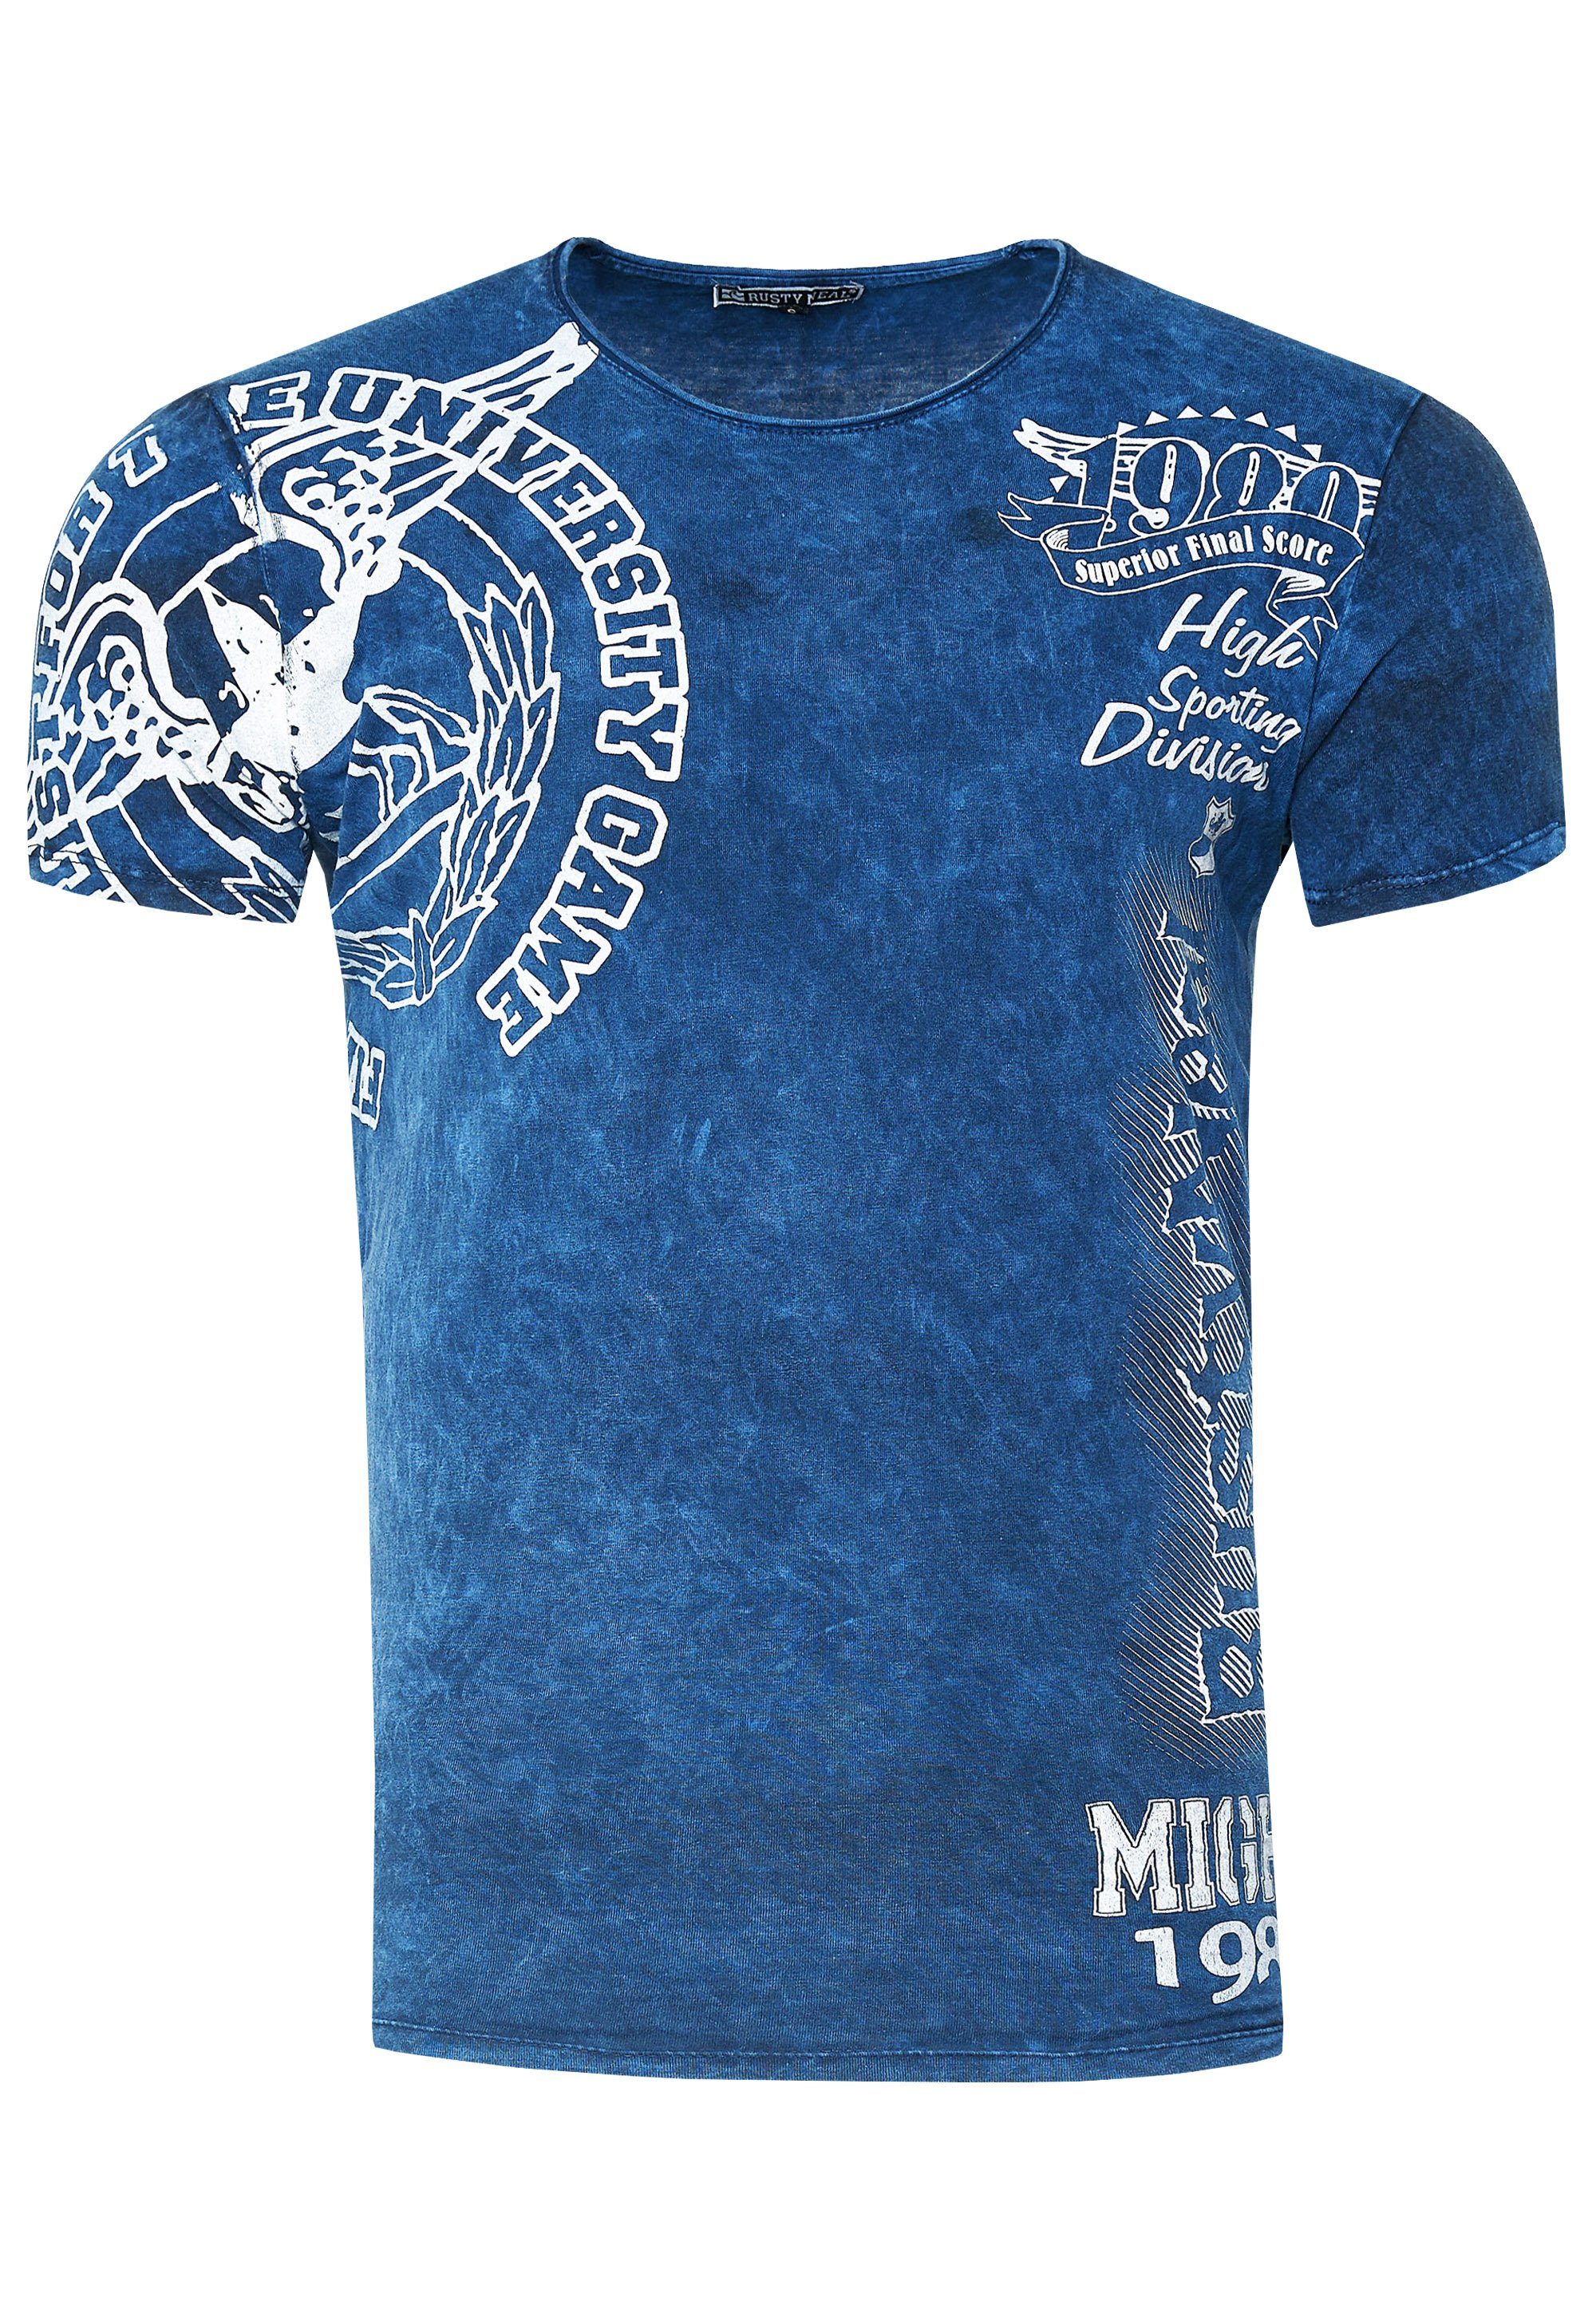 Rusty Print blau Neal mit eindrucksvollem T-Shirt